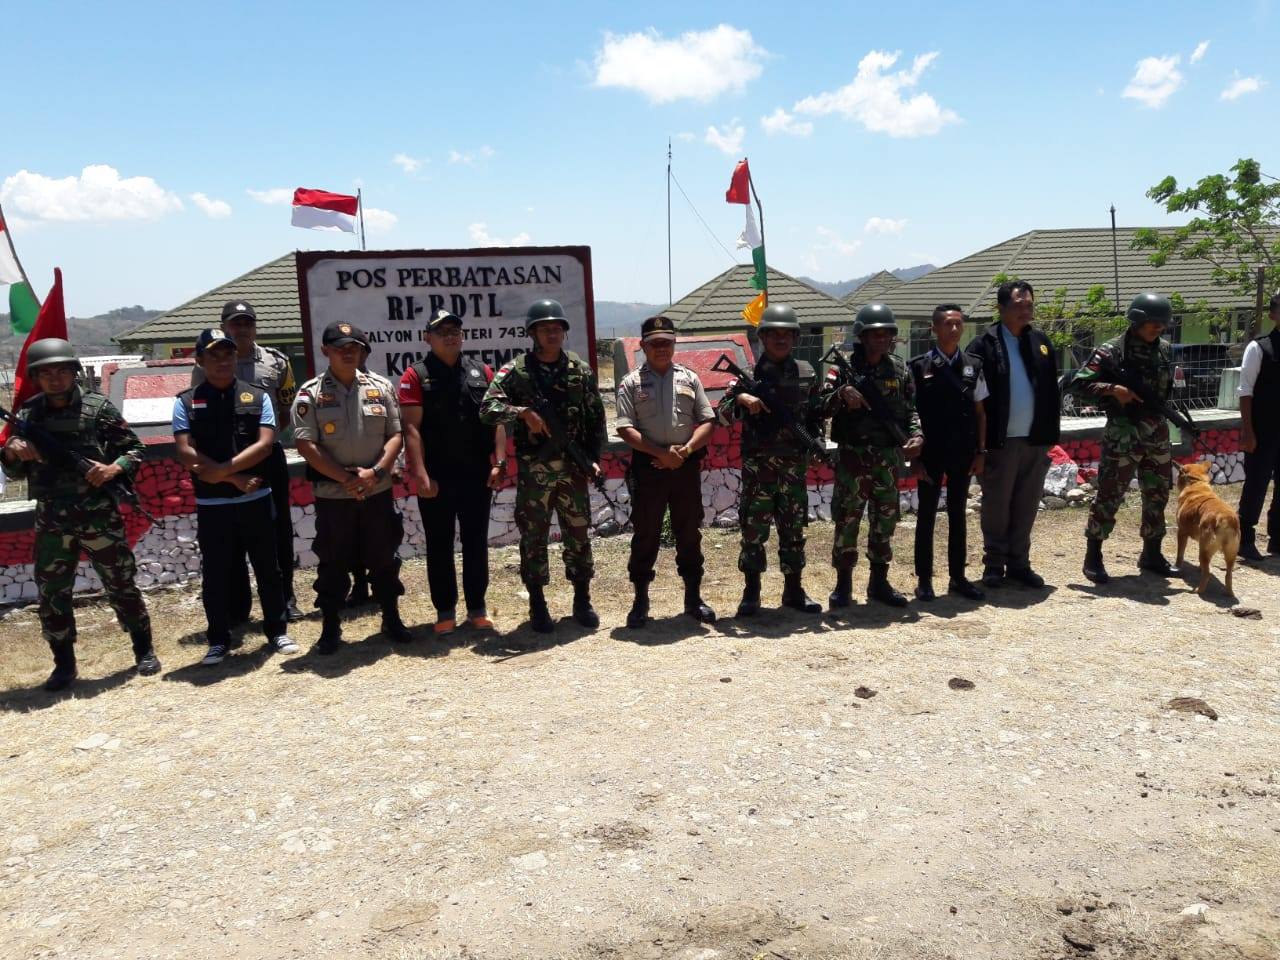 Operasi Linbas Turangga 2018 : Gandeng TNI dan Bea Cukai, Polsubsektor Laktutus Giatkan Patroli di Tapal Batas RI-RDTL